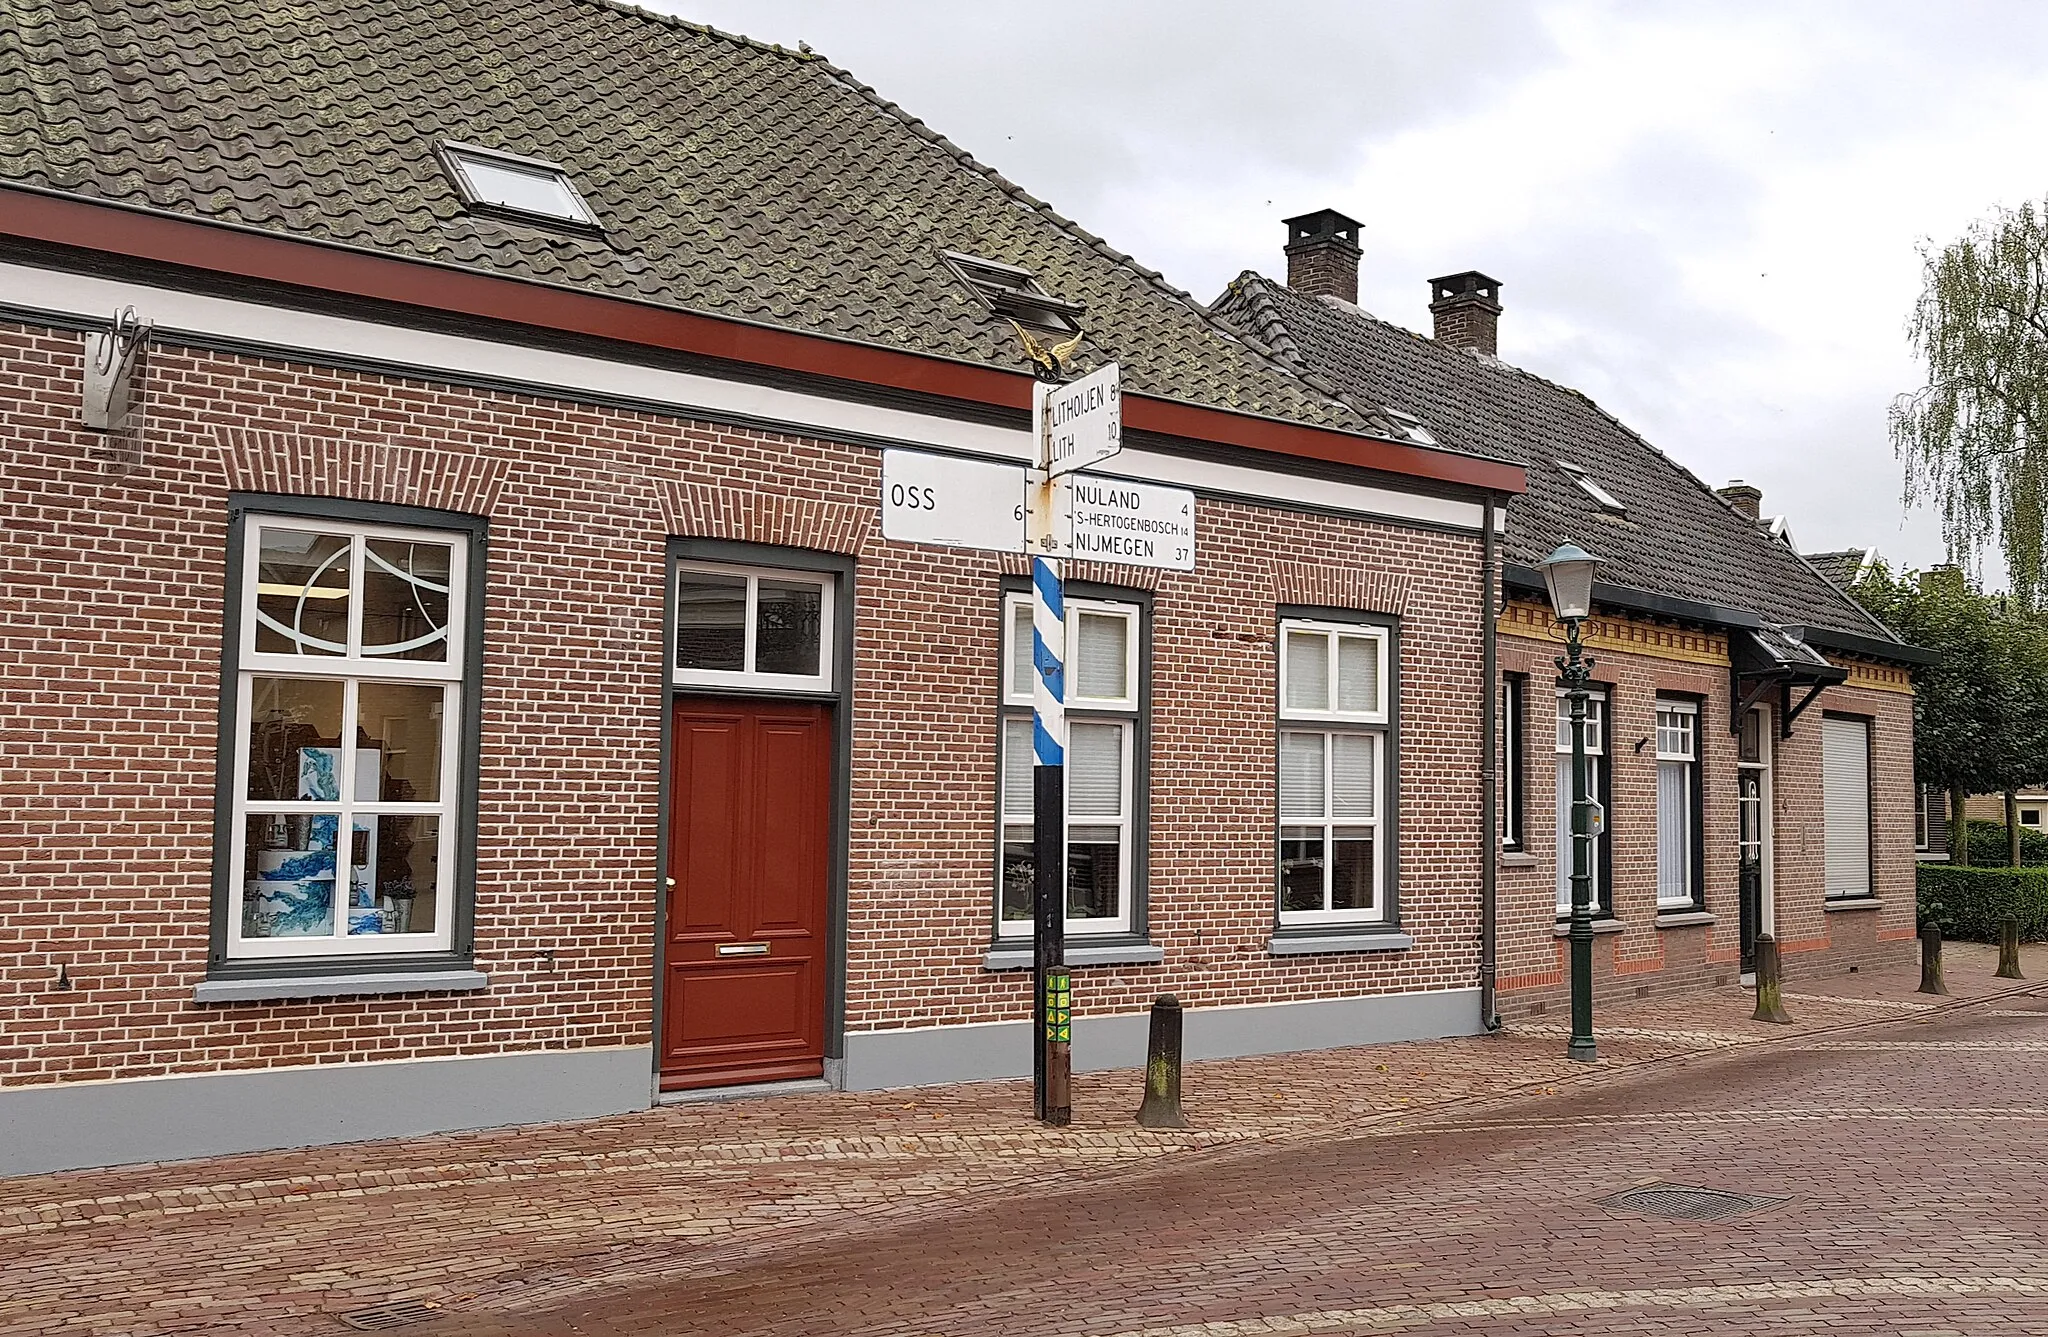 Photo showing: Huizen aan Dorpstraat 2 en 4 in Geffen. Voor de deur staat een antieke wegwijzer.